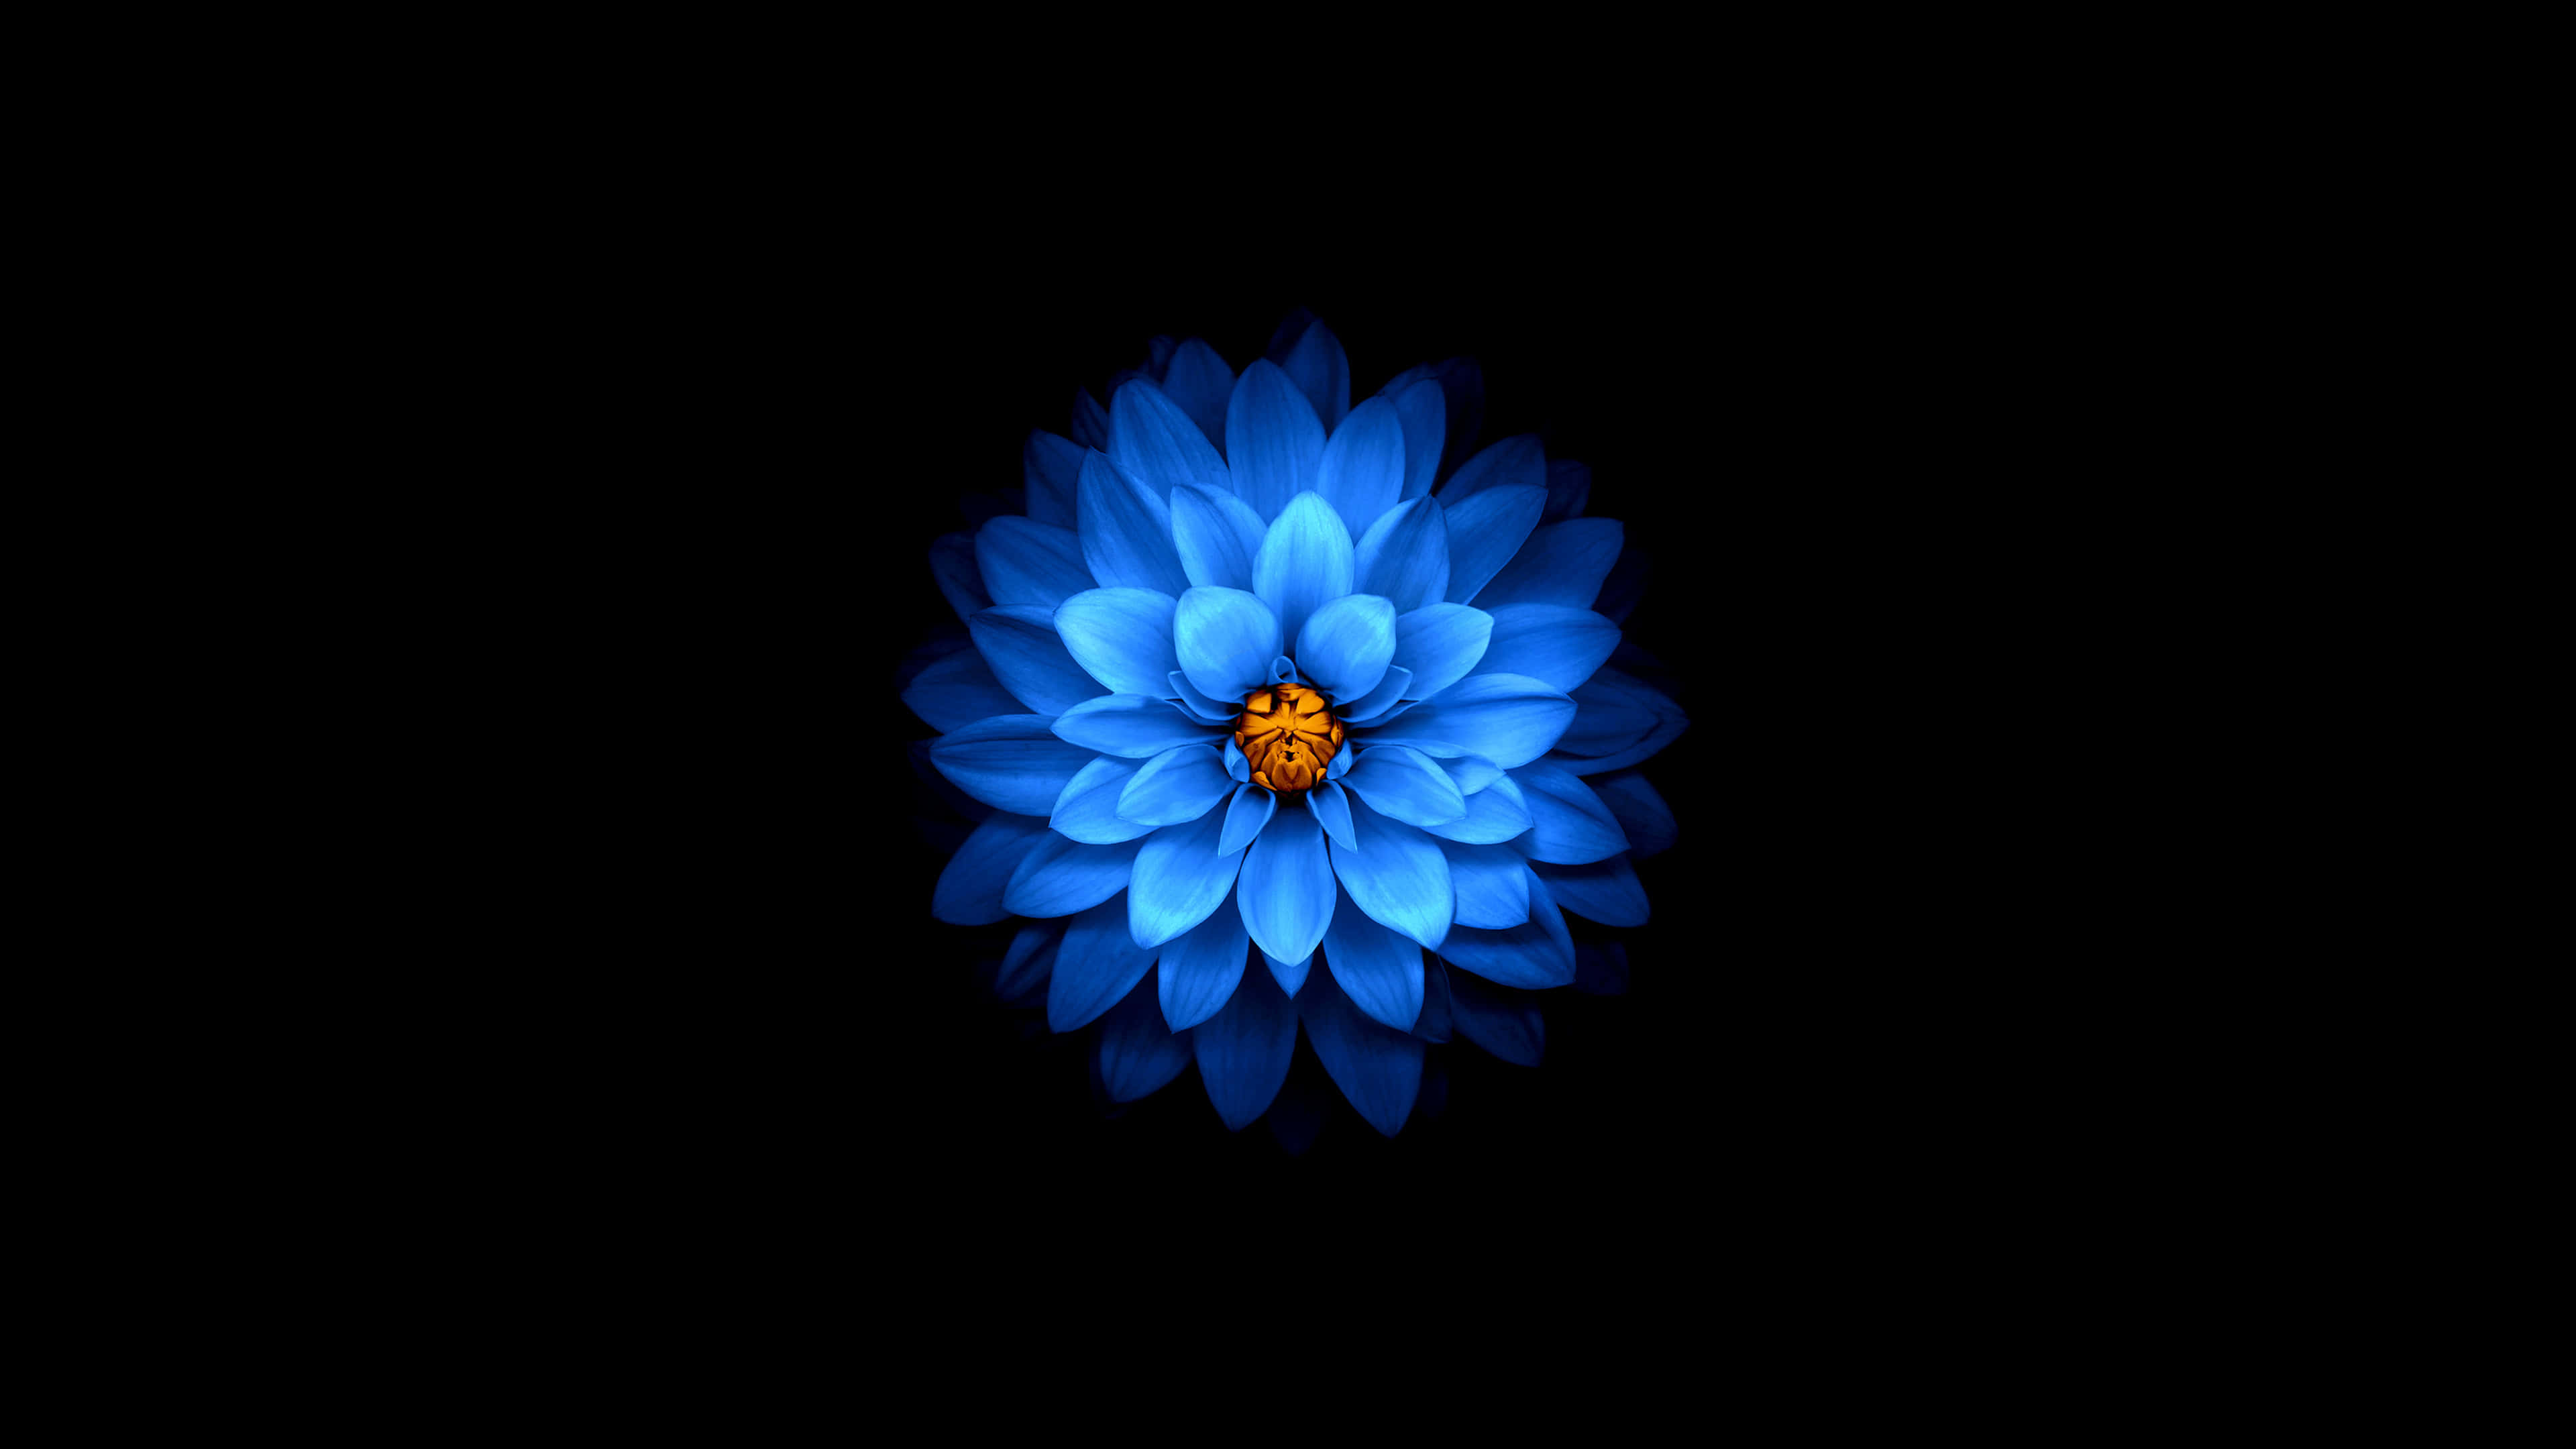 Bộ sưu tập hoa sen xanh đẹp là tập hợp những tác phẩm nghệ thuật tinh tế, mang đến cho bạn một trải nghiệm thăng hoa đắm say với các loài hoa sen đầy sắc màu và thanh tao. Điểm nhấn đặc biệt của bộ sưu tập này là sự ấn tượng của hoa sen xanh, đưa bạn đến một thế giới hoàn toàn mới và tuyệt vời.